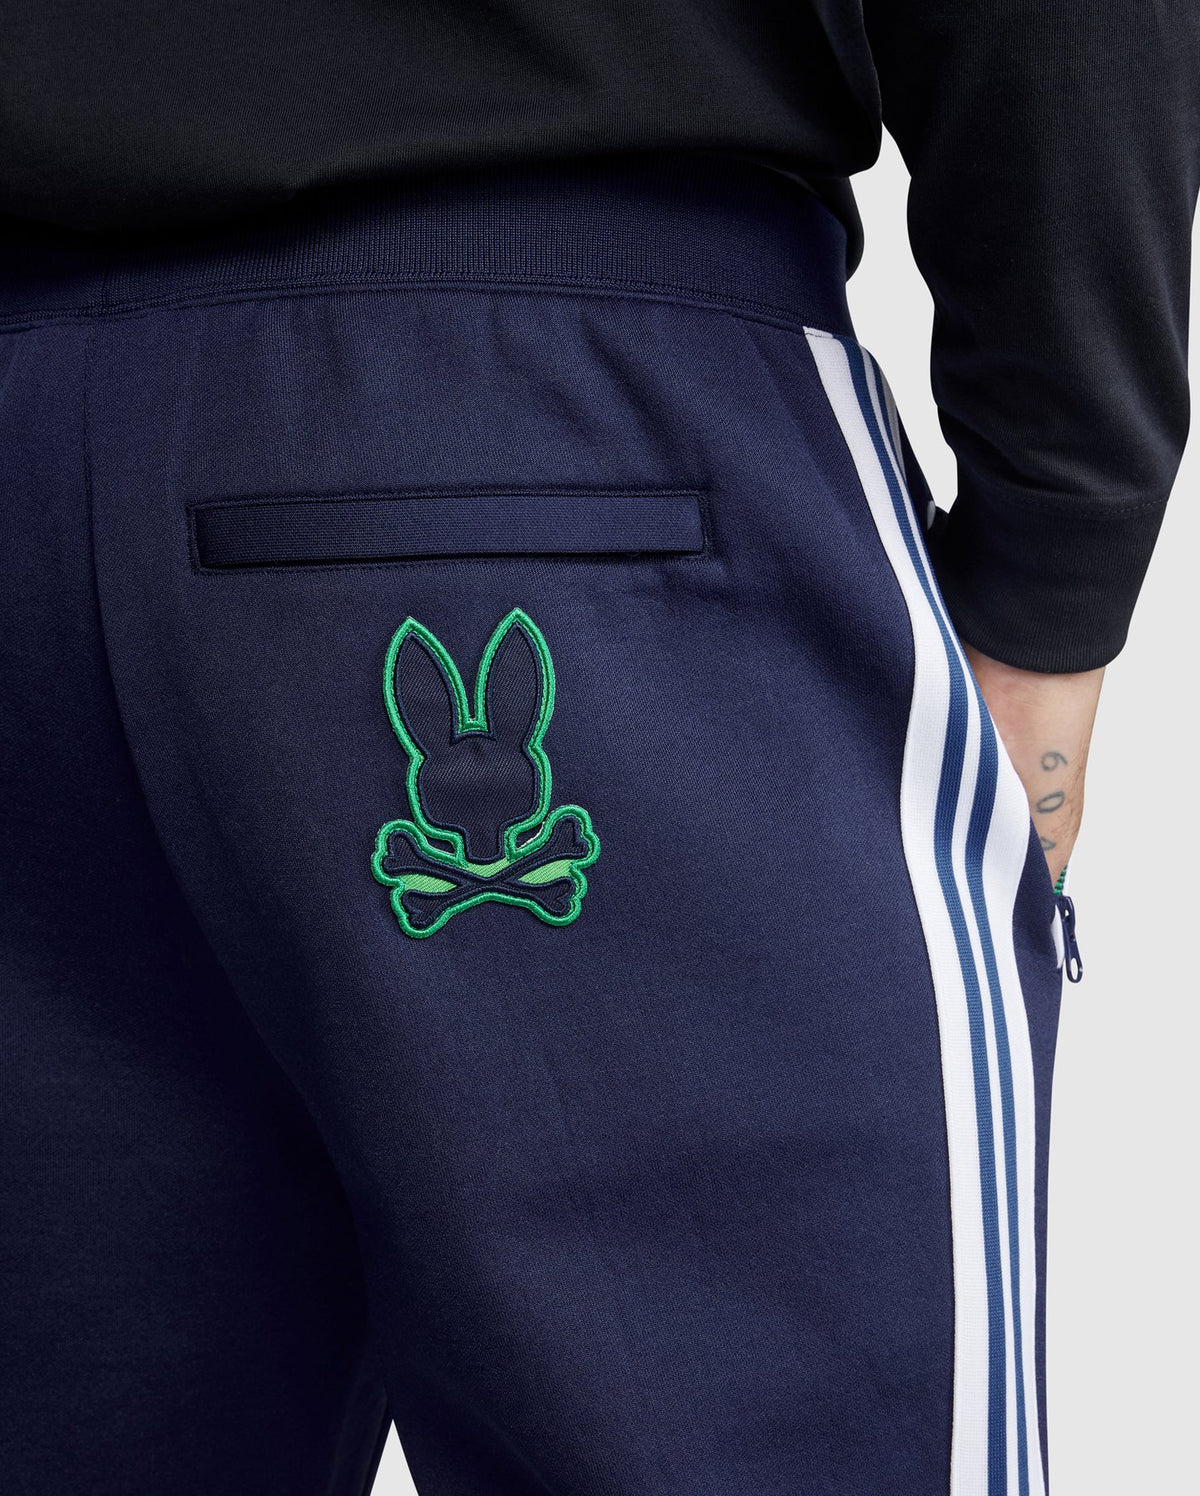 Psycho Bunny-Mapperley&Matlock Zip Up Sweatshirt Set-Admiral Blue